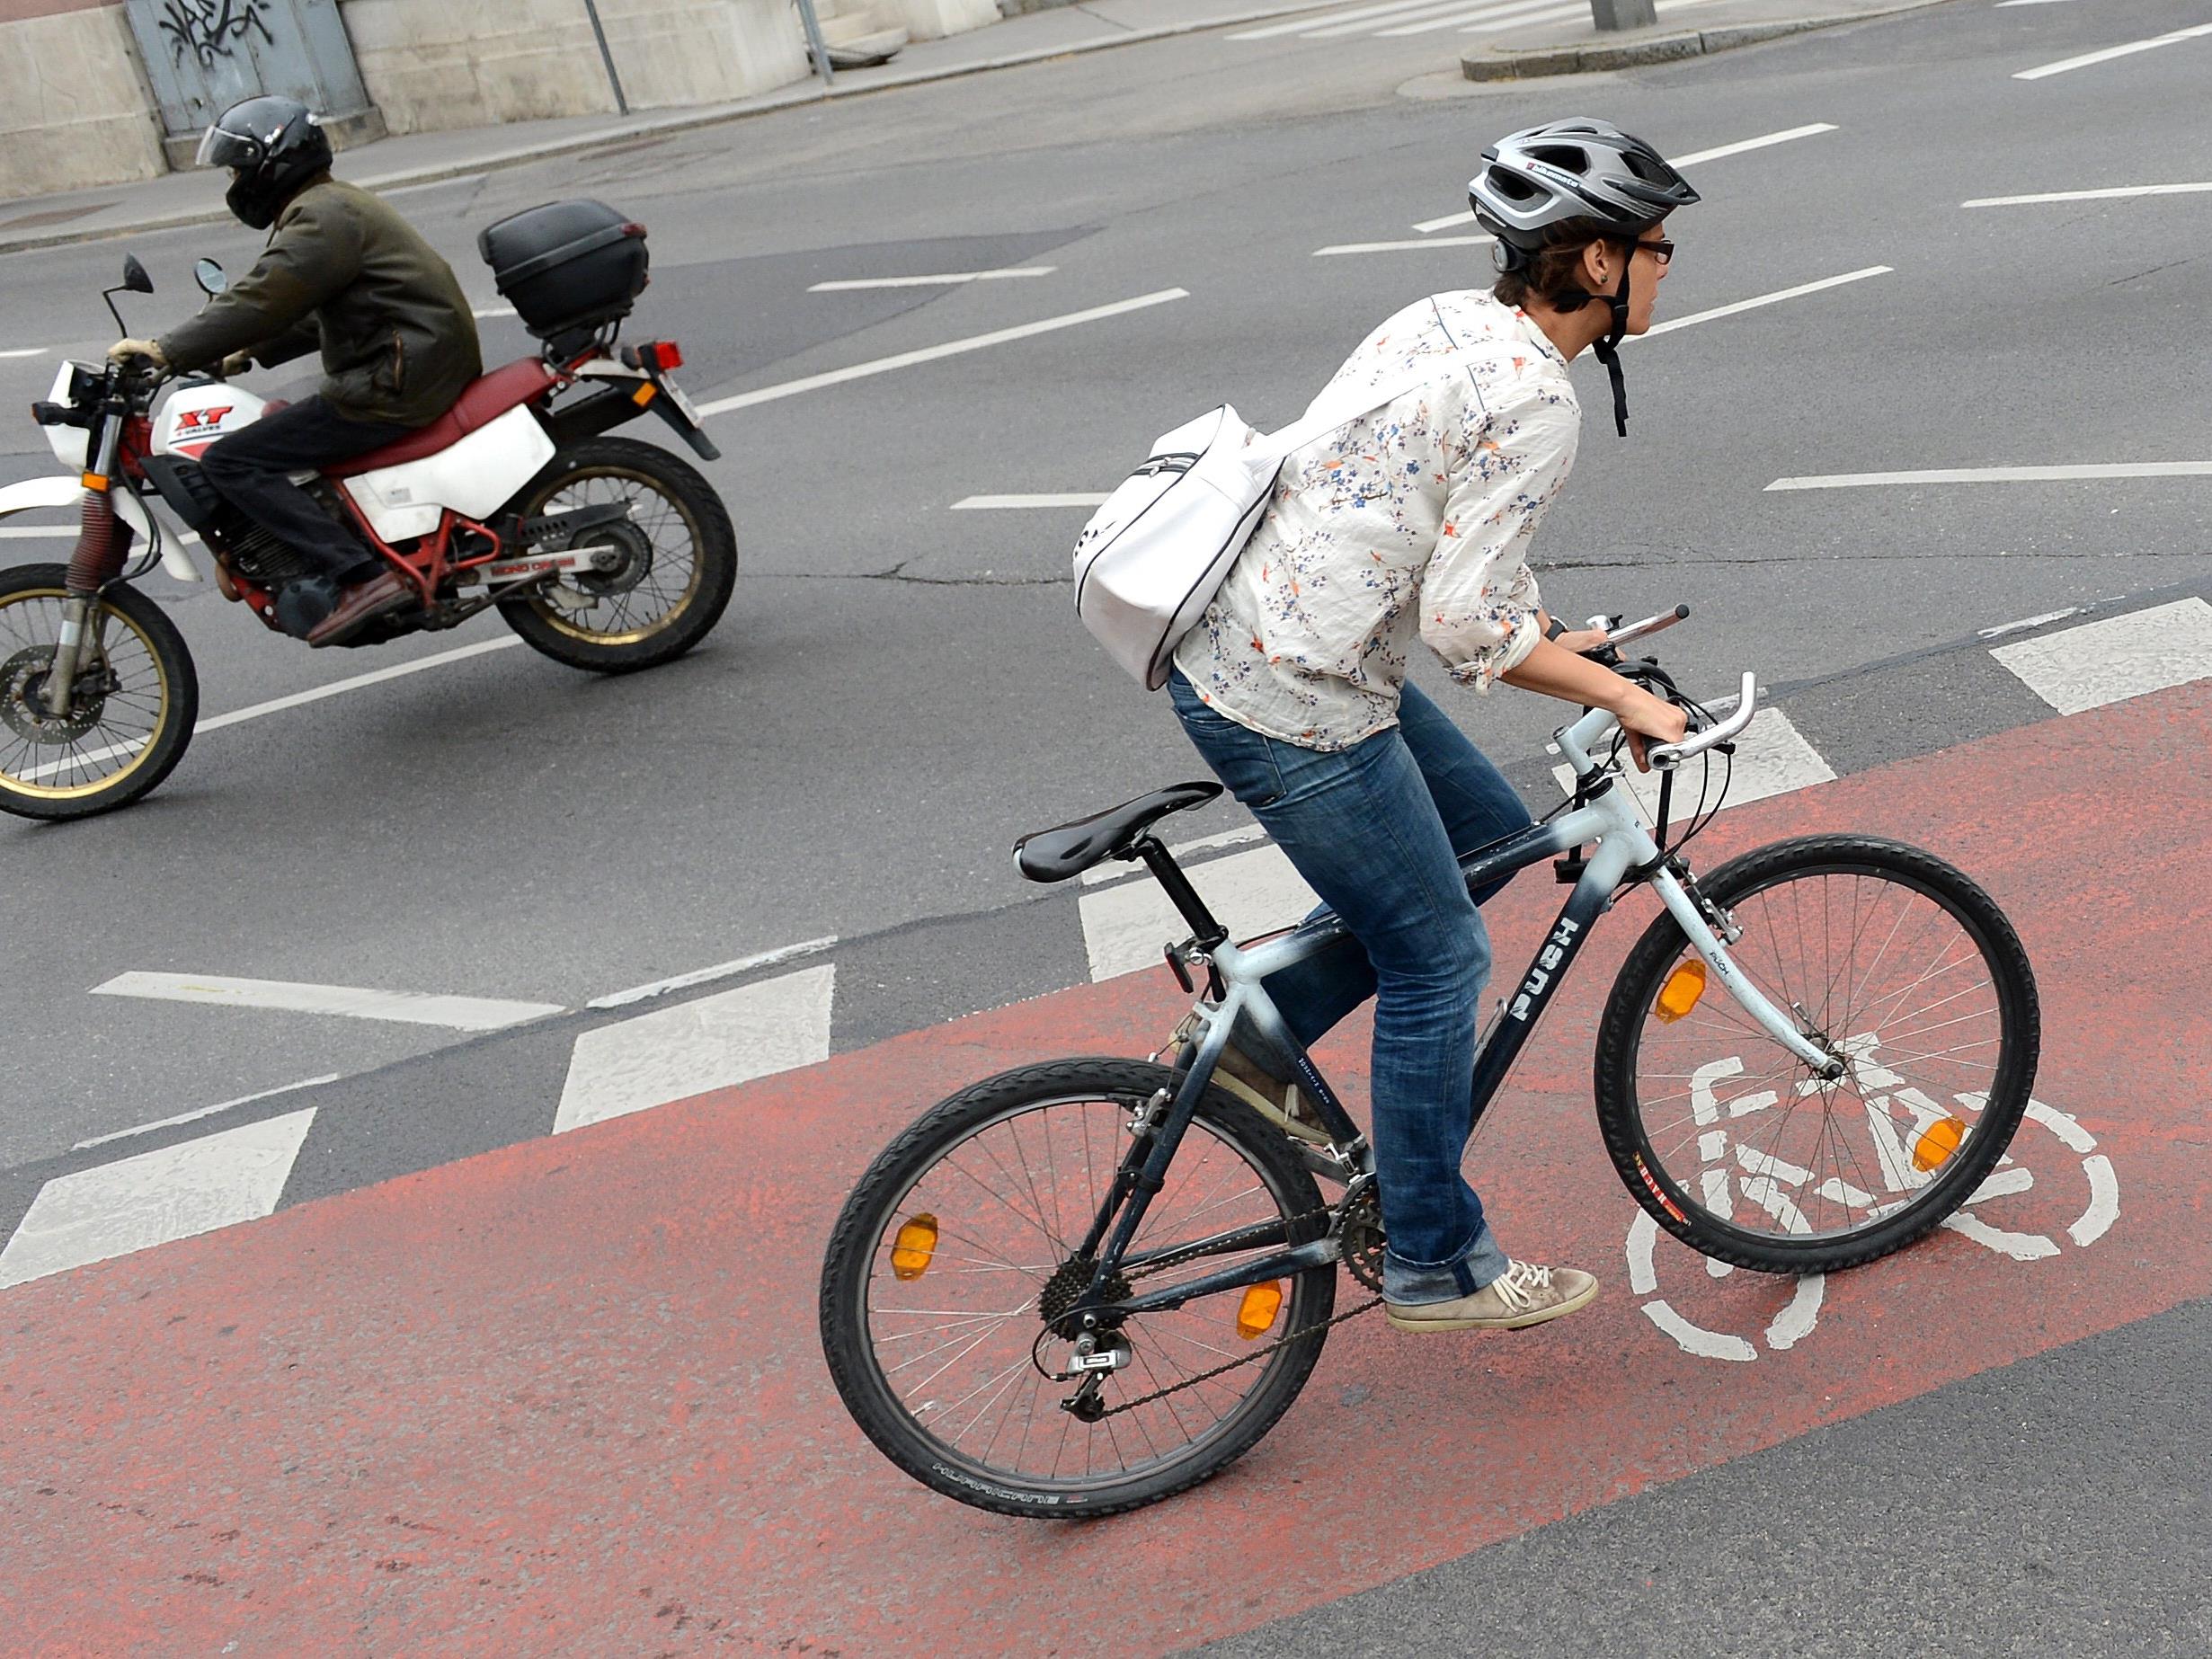 Radfahrer werden laut der Umfrage besonders kritisch gesehen.